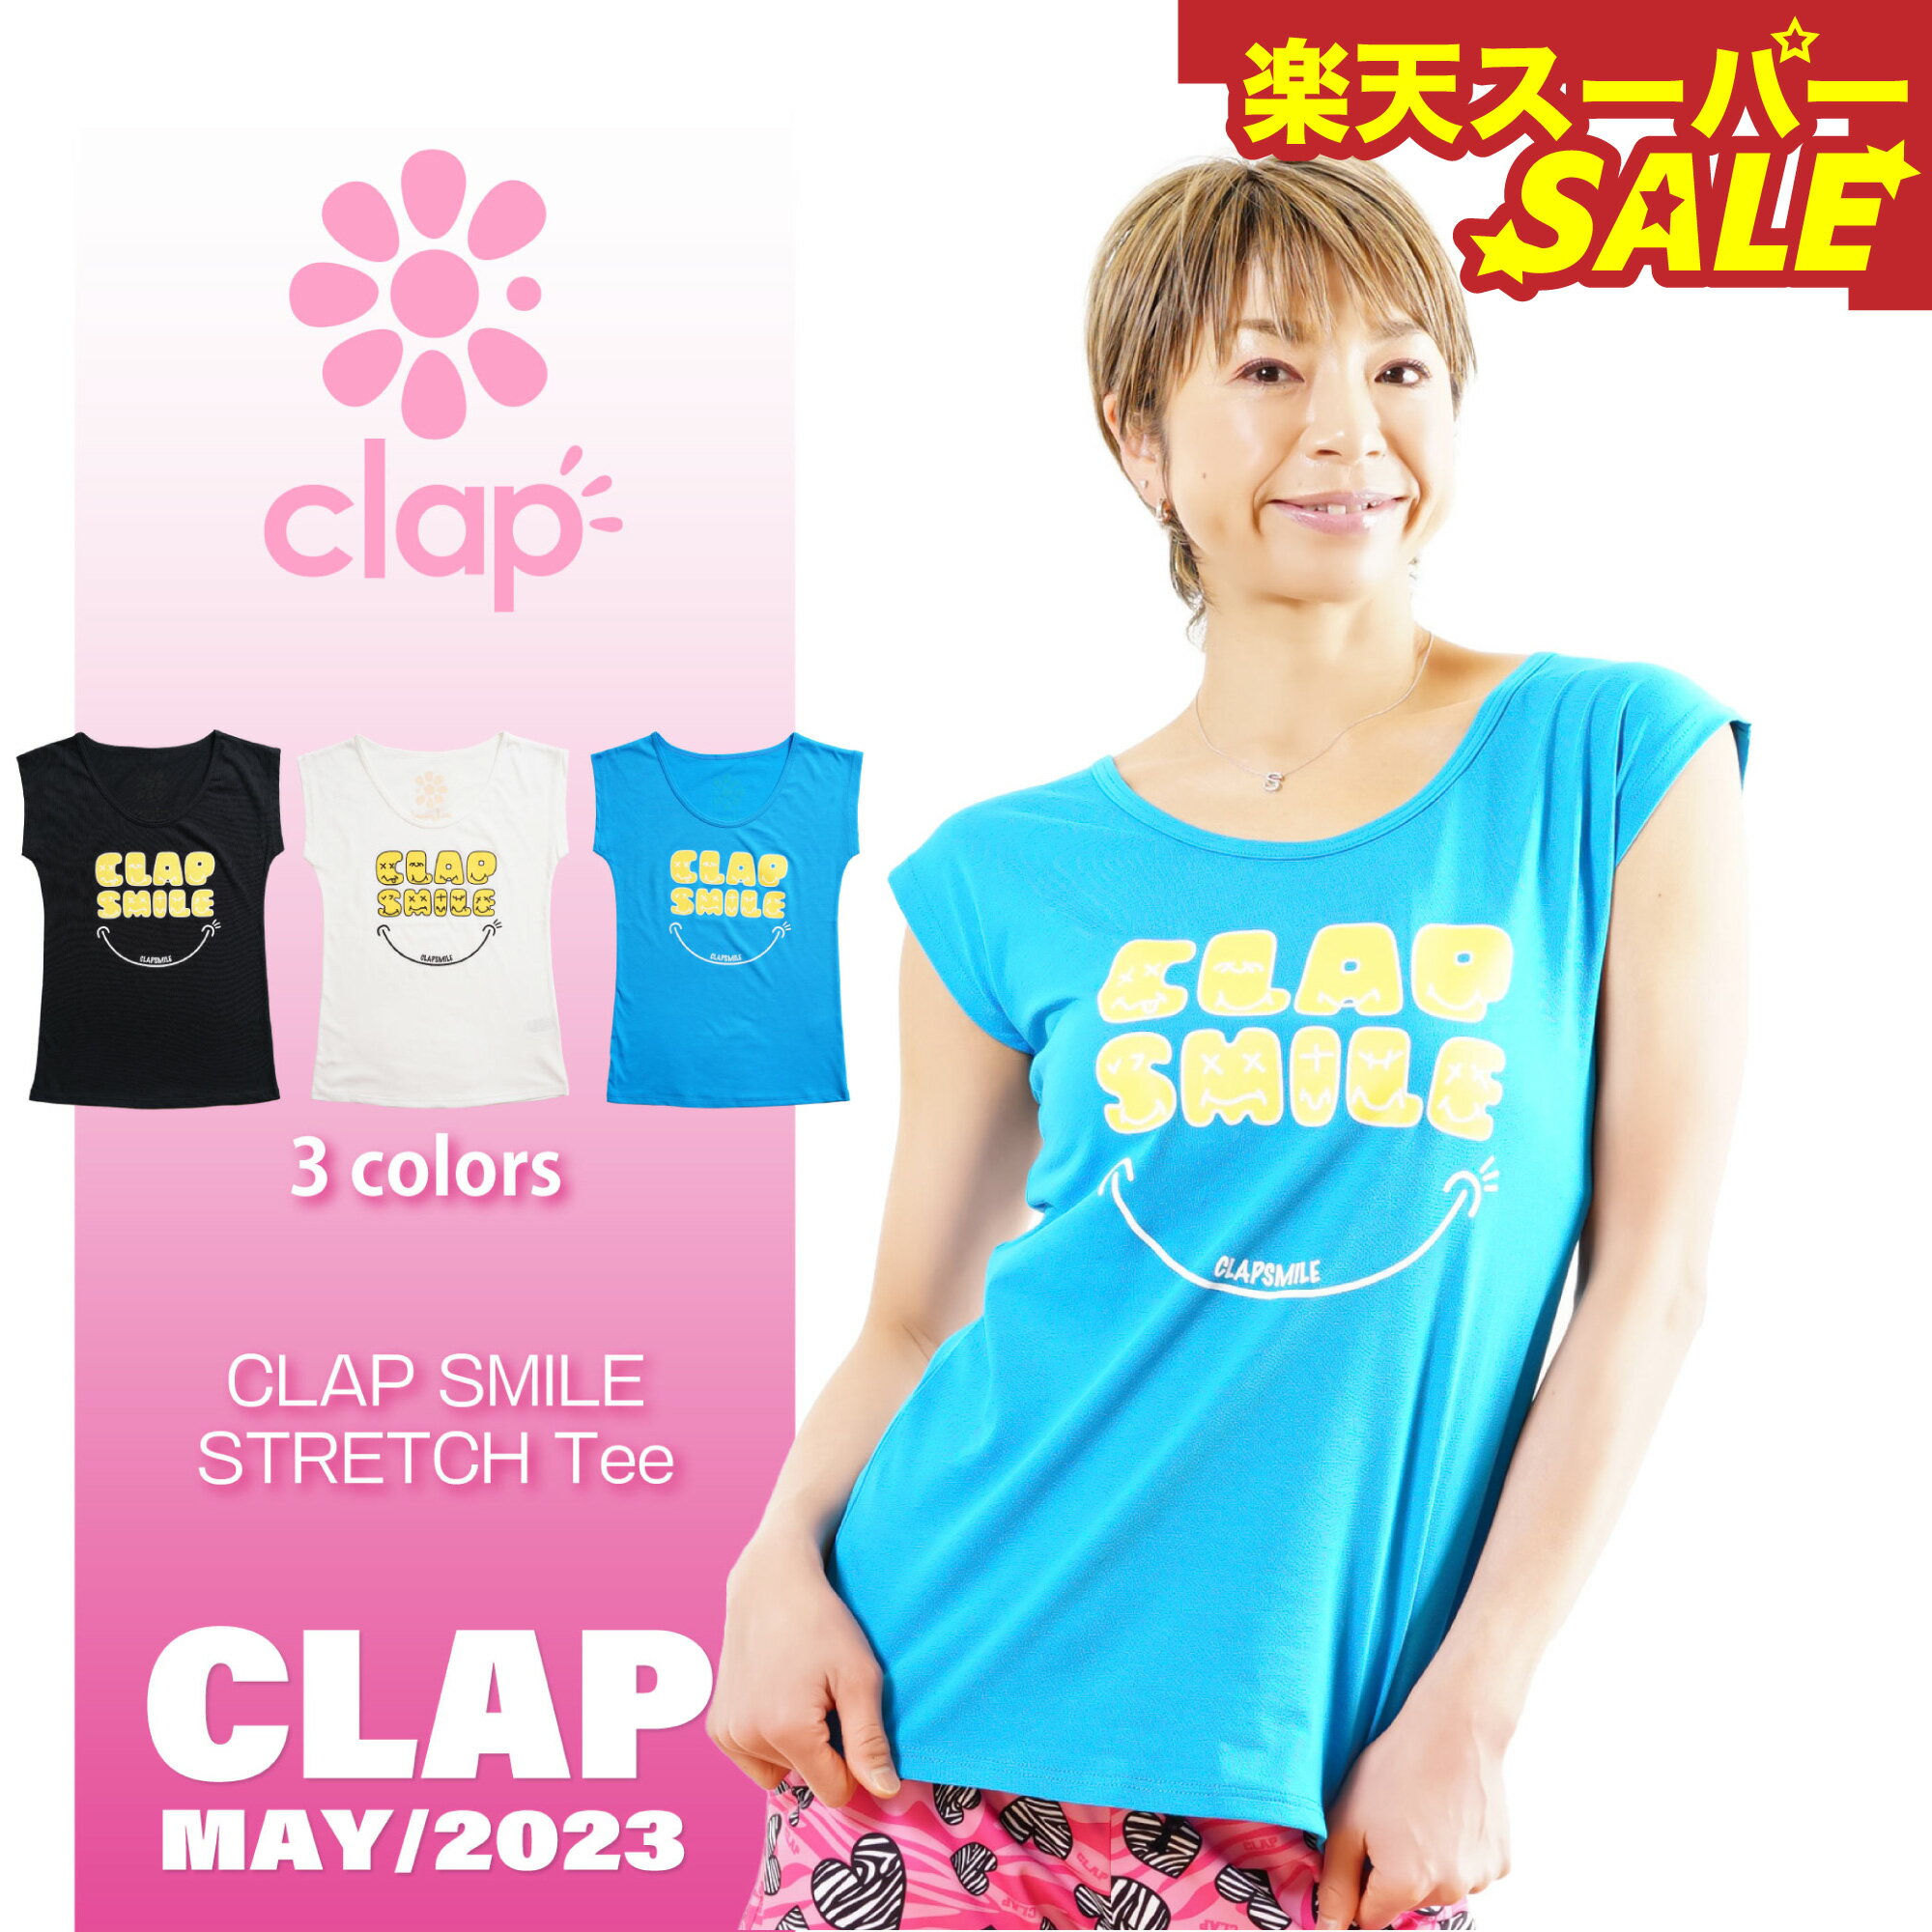 【楽天スーパーSALE】【clap】クラップ【3色】CLAP SMILE STRETCH Tee フィットネス ウェア スポーツ ウェア トレーニング ウェア レディース ダンス エアロ トップス コットン 日本製